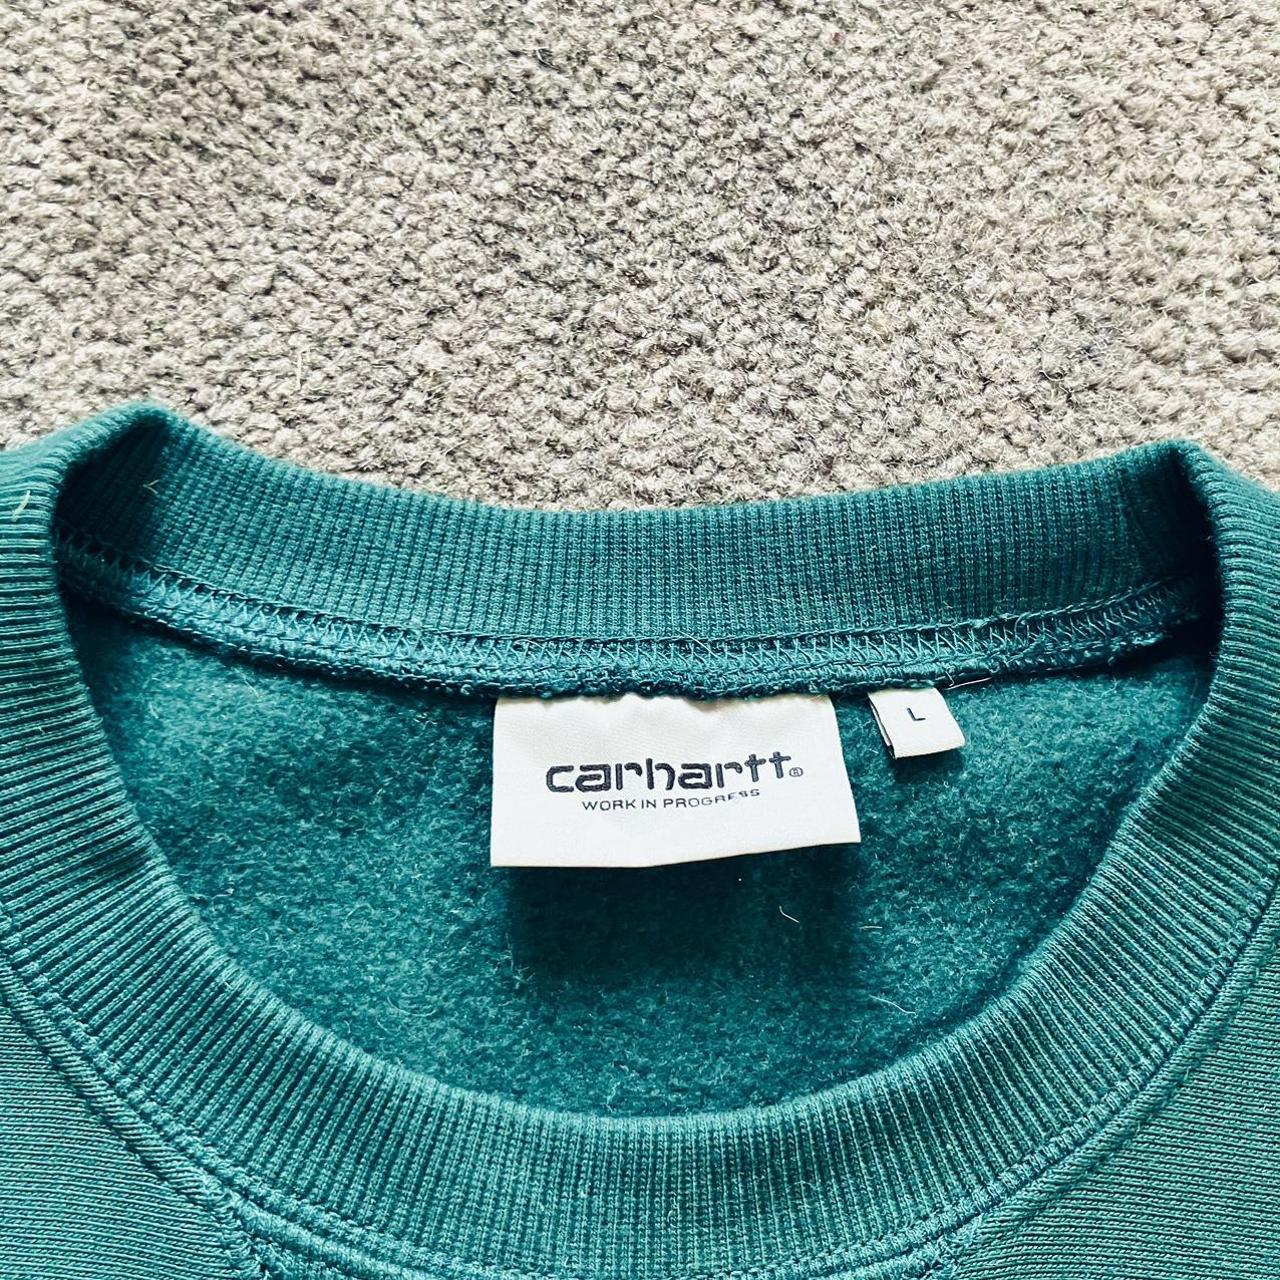 Carhartt Men's Sweatshirt | Depop